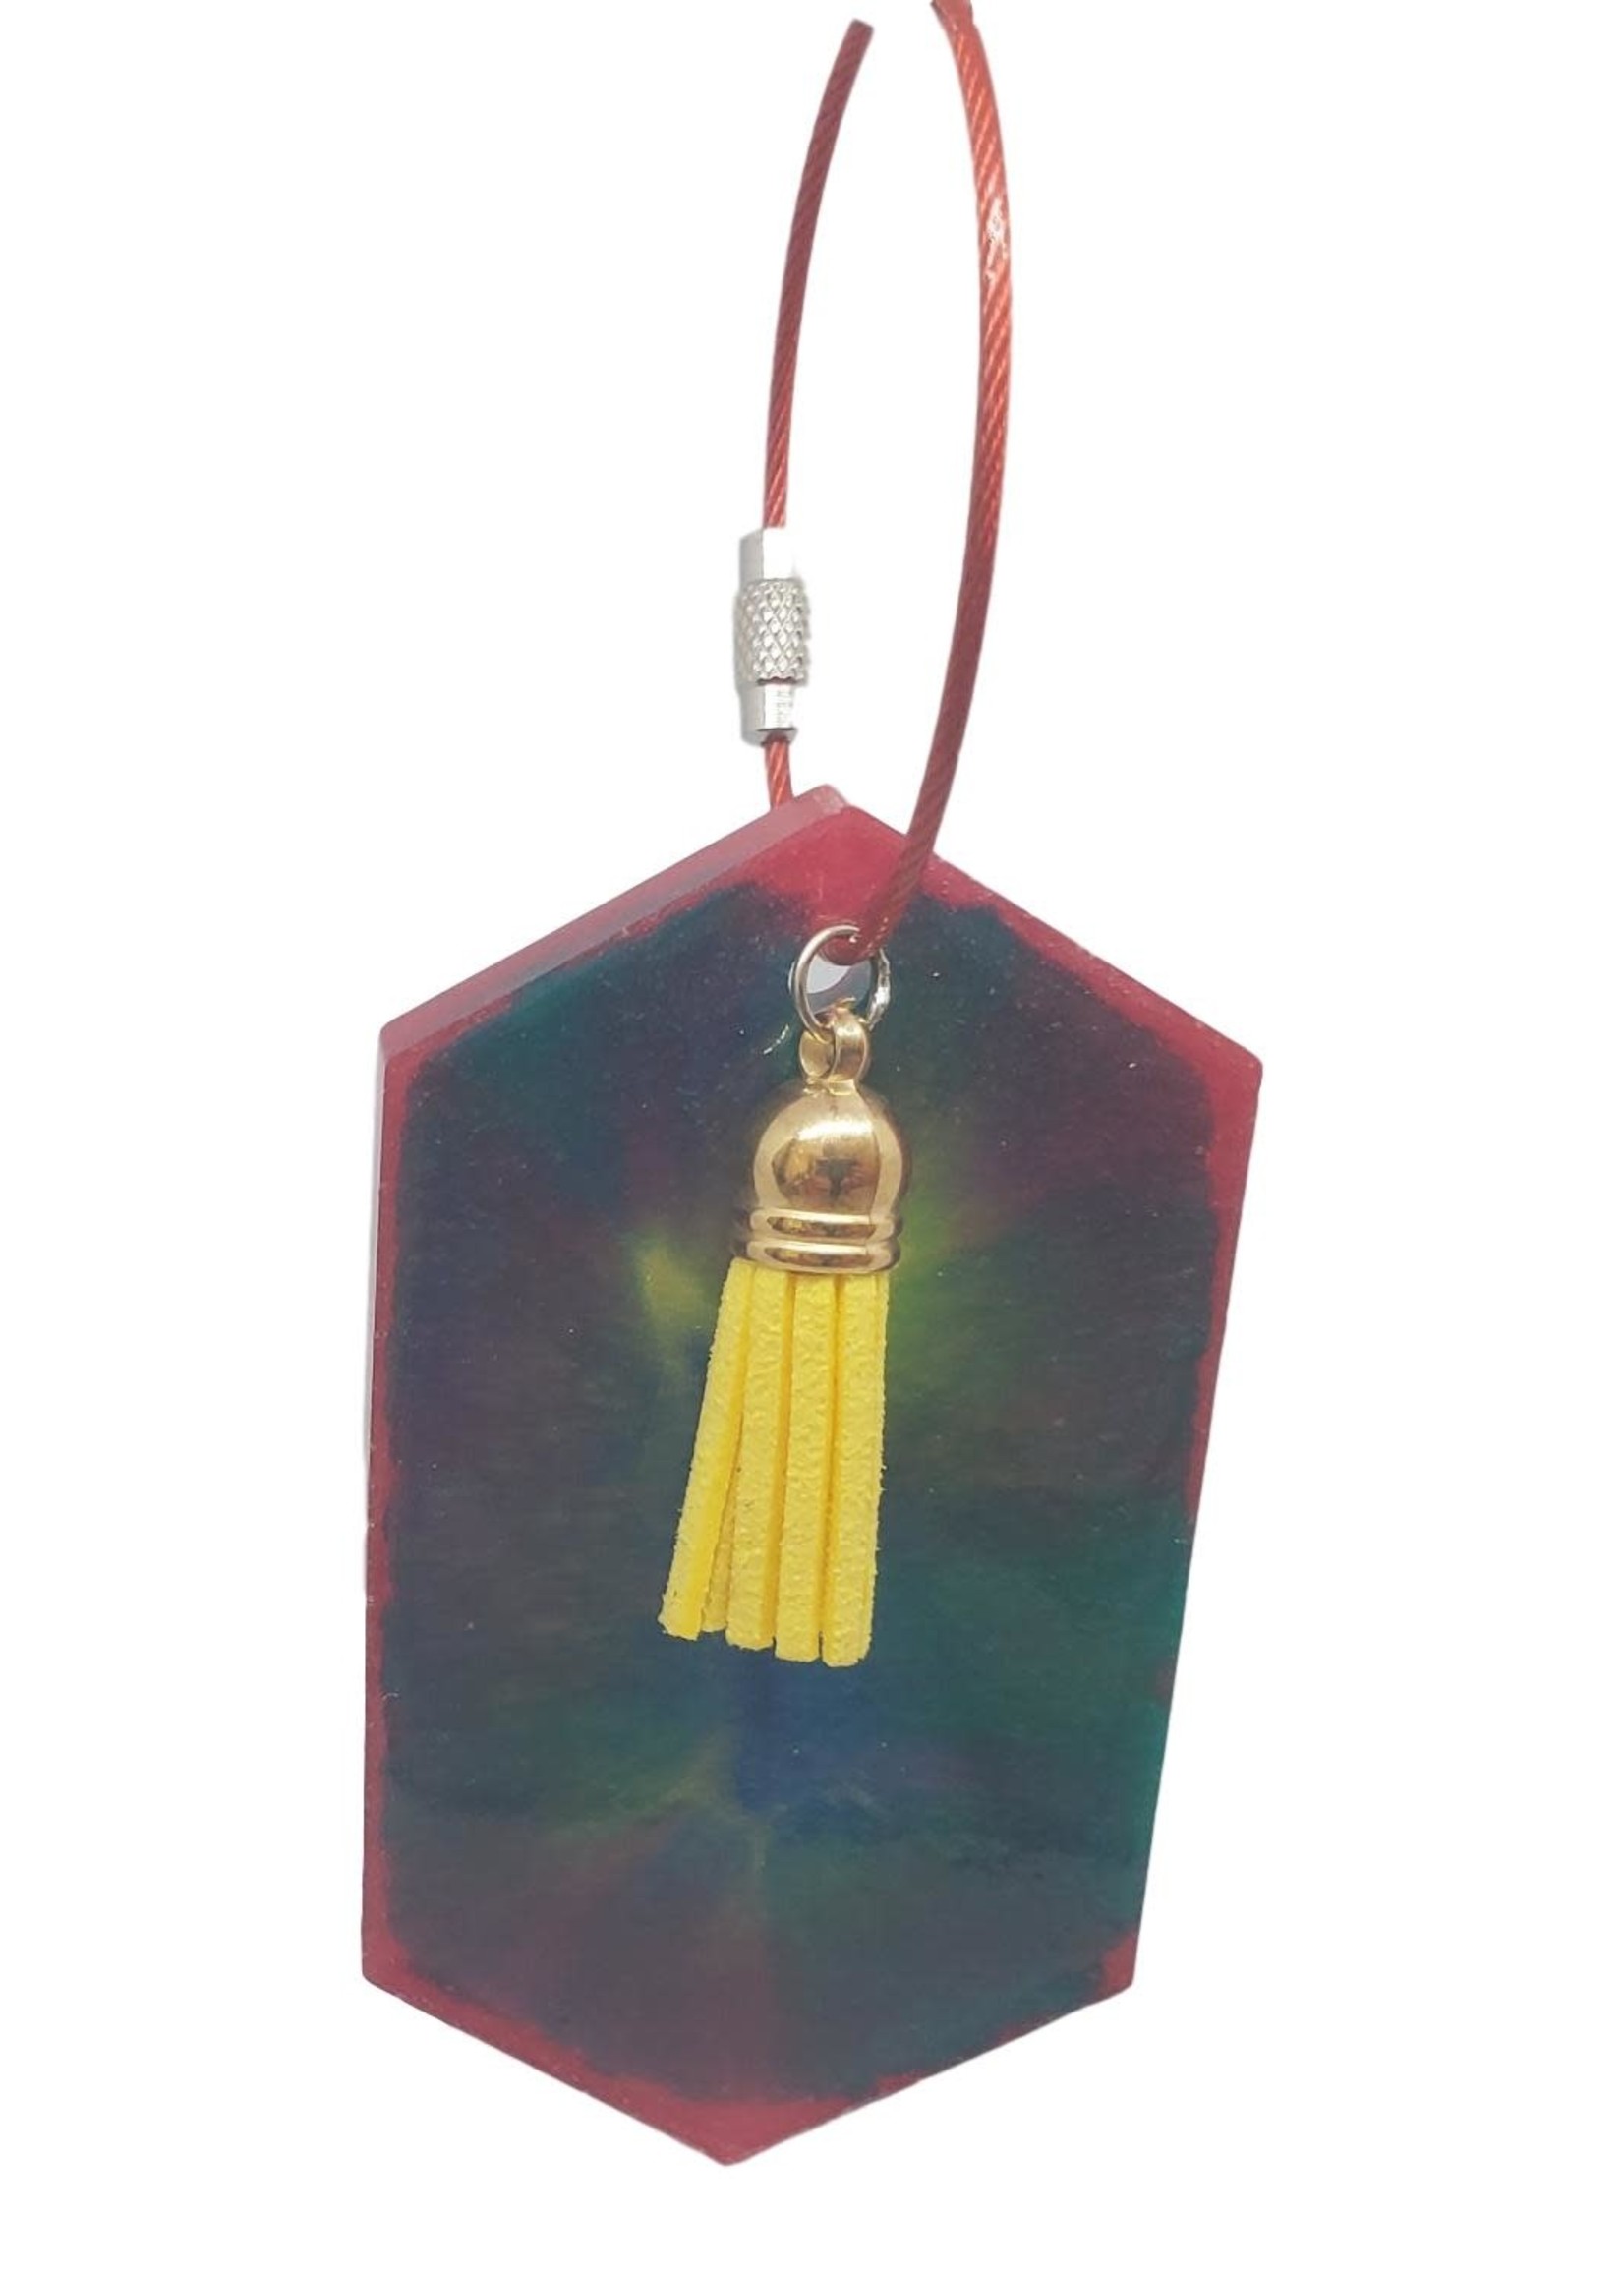 East Coast Sirens Tie-Dye Key Chain/Luggage Tag